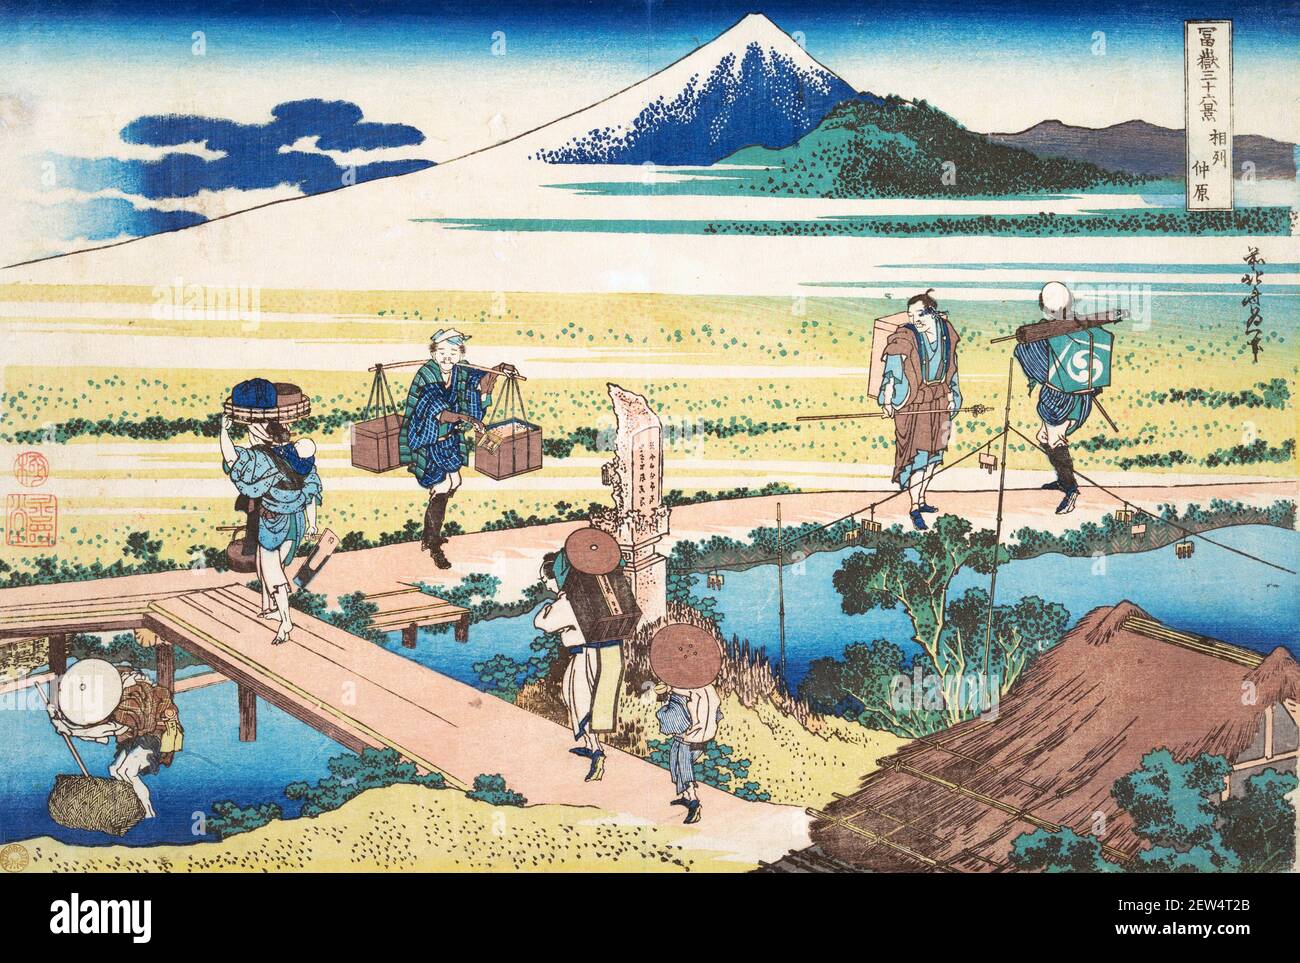 Hokusai. Tago Bay in der Nähe von Ejiri an der Tōkaidō (Tōkaidō Ejiri Tago no ura ryaku zu), von Katsushika Hokusai (c. 1760-1849), Farbholzschnitt, c. 1830-32, aus der Serie sechsunddreißig Ansichten des Fuji-Berges (Fugaku sanjūrokkei) Stockfoto